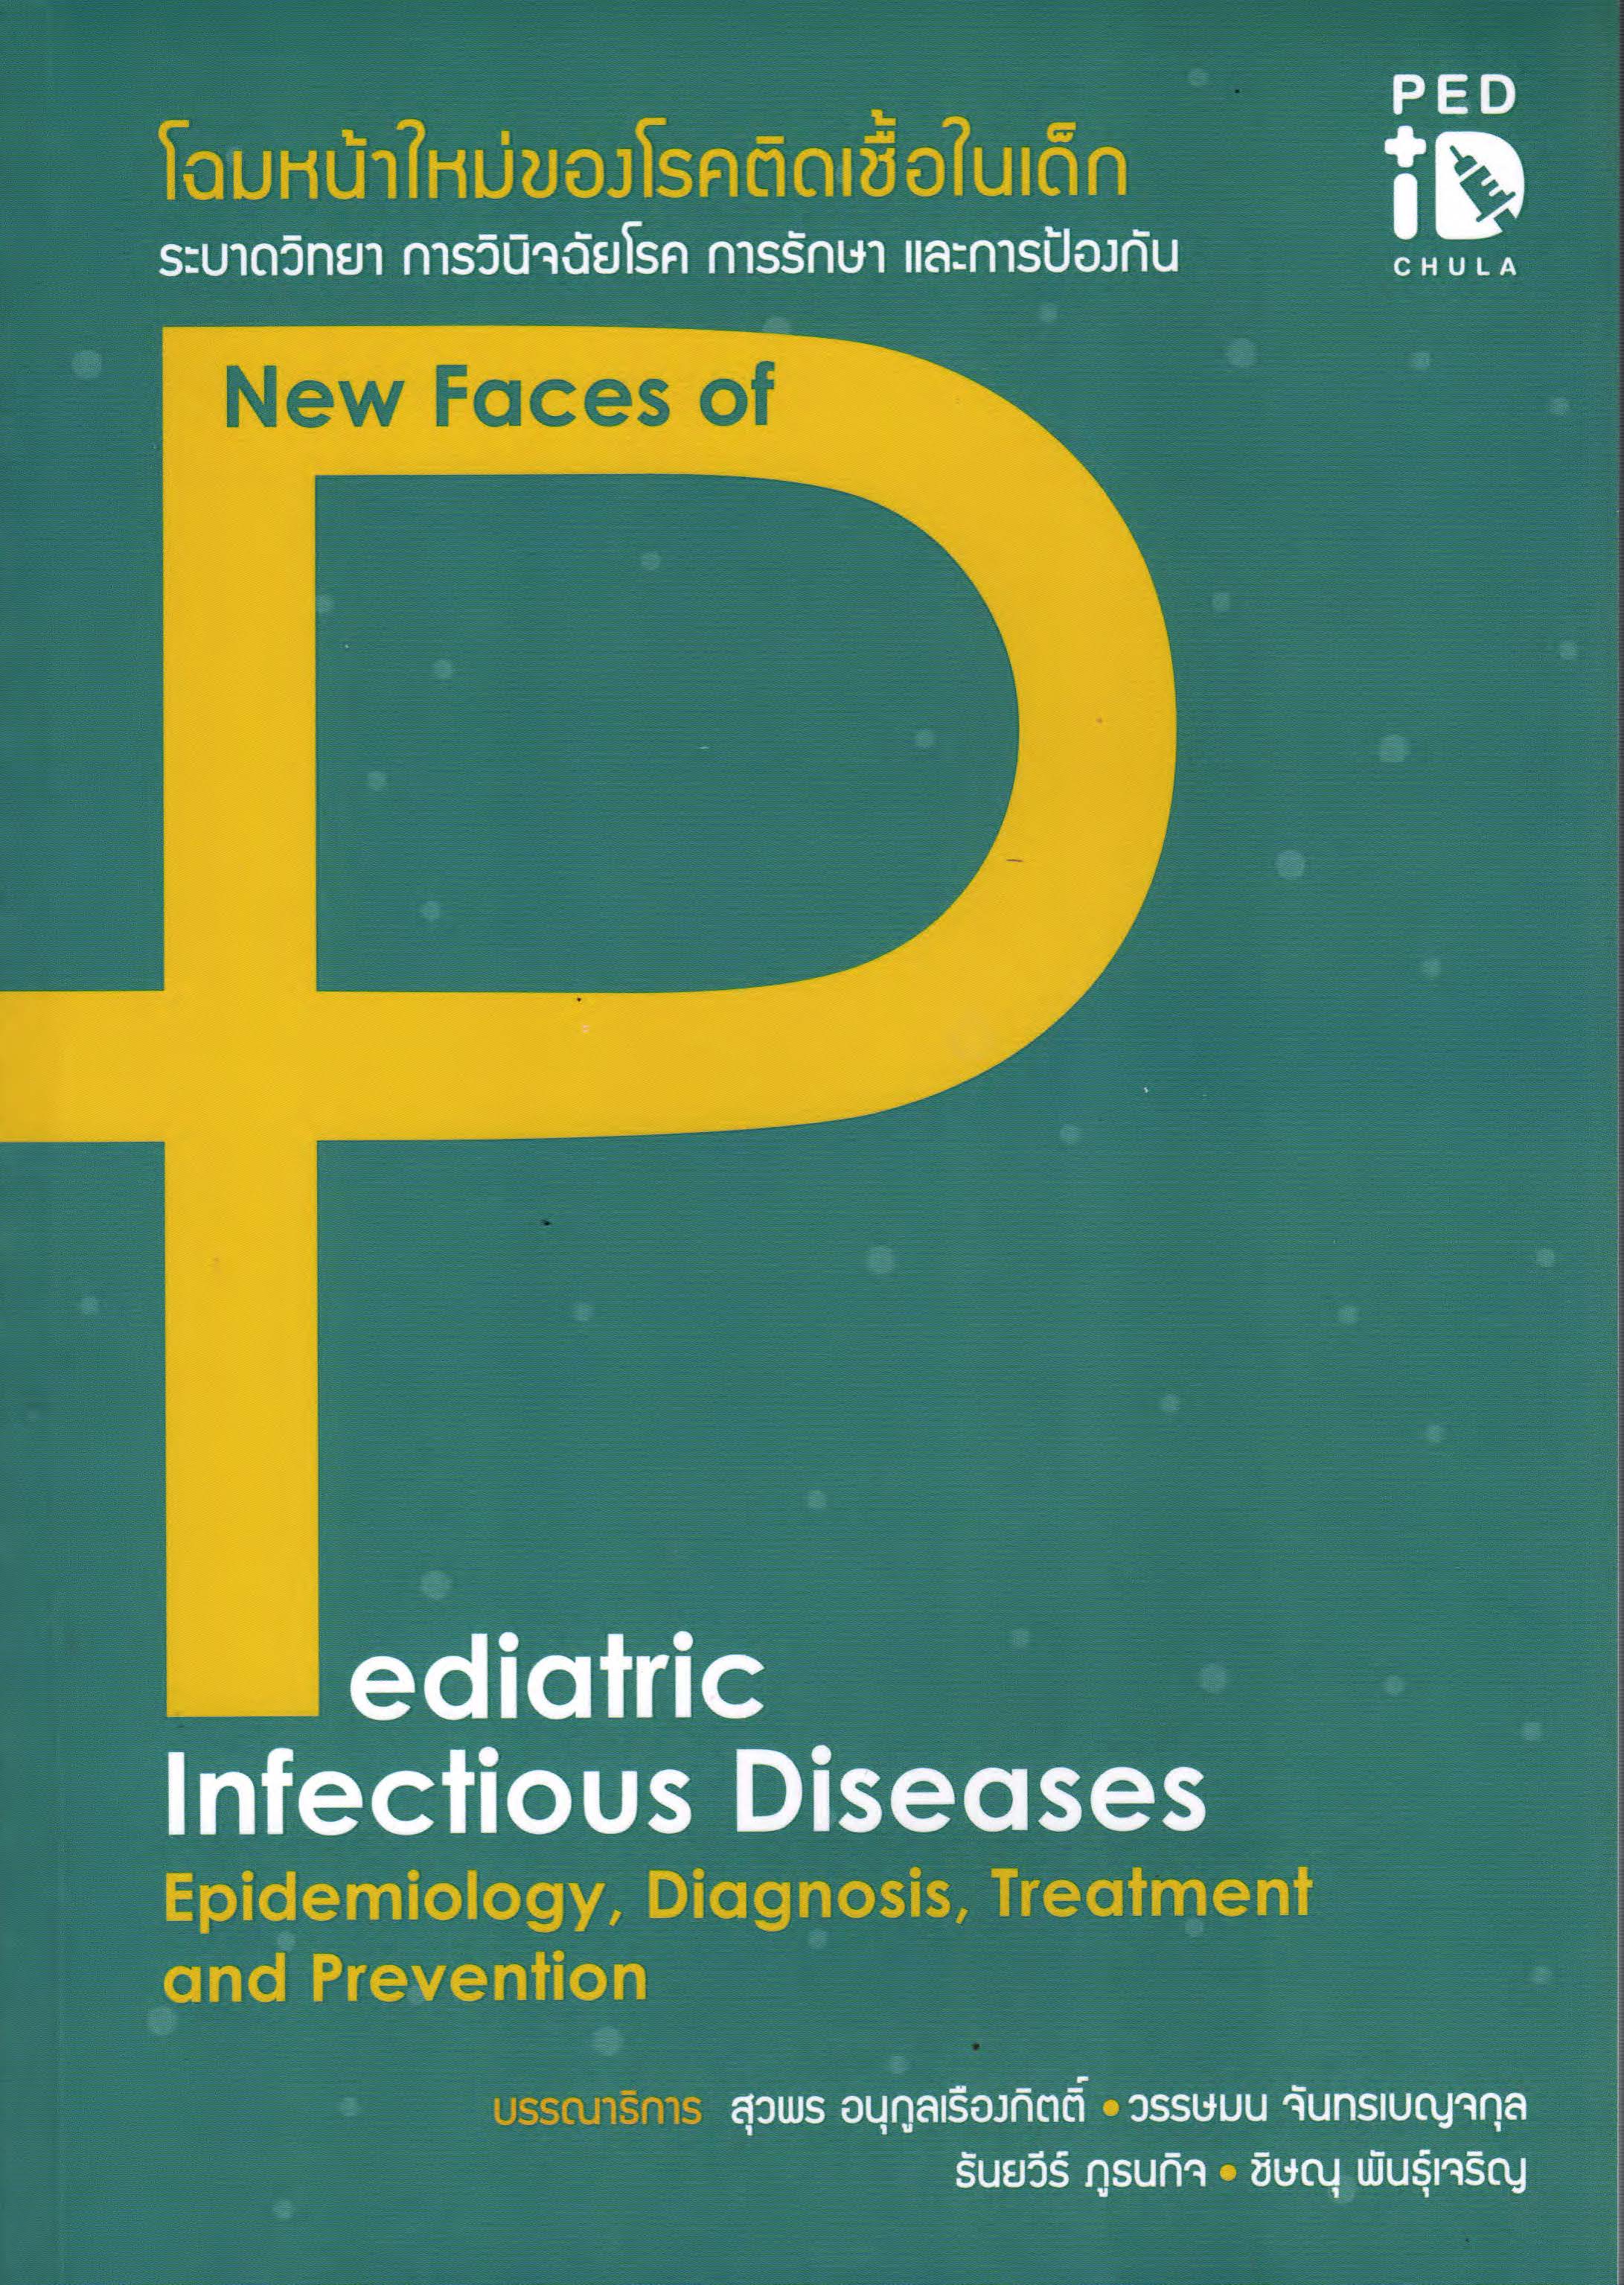 โฉมหน้าใหม่ของโรคติดเชื้อในเด็ก ระบาดวิทยา การวินิจฉัยโรค การรักษา และการป้องกัน = New faces of pediatric infectious diseases epidemiology, diagnosis, treatment and prevention